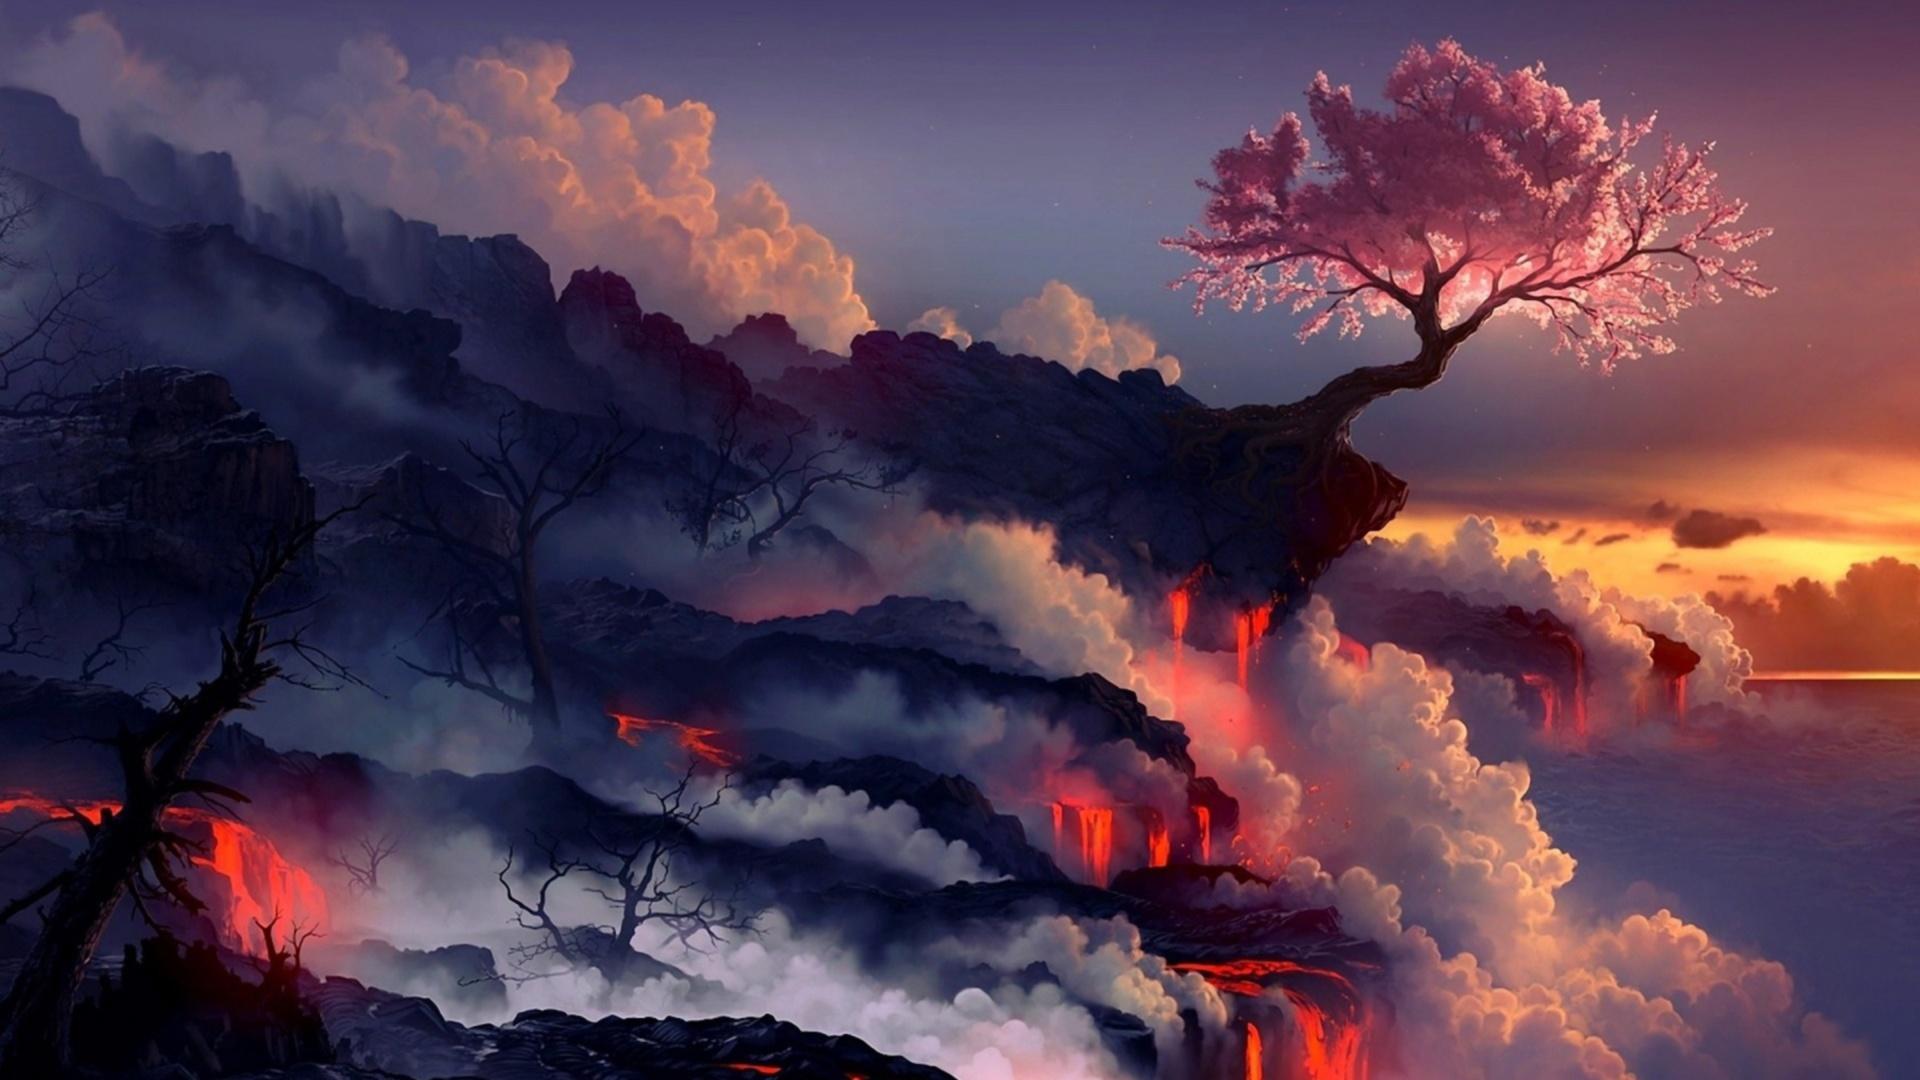 Free Anime Dark Landscape Wallpaper Desktop Background at